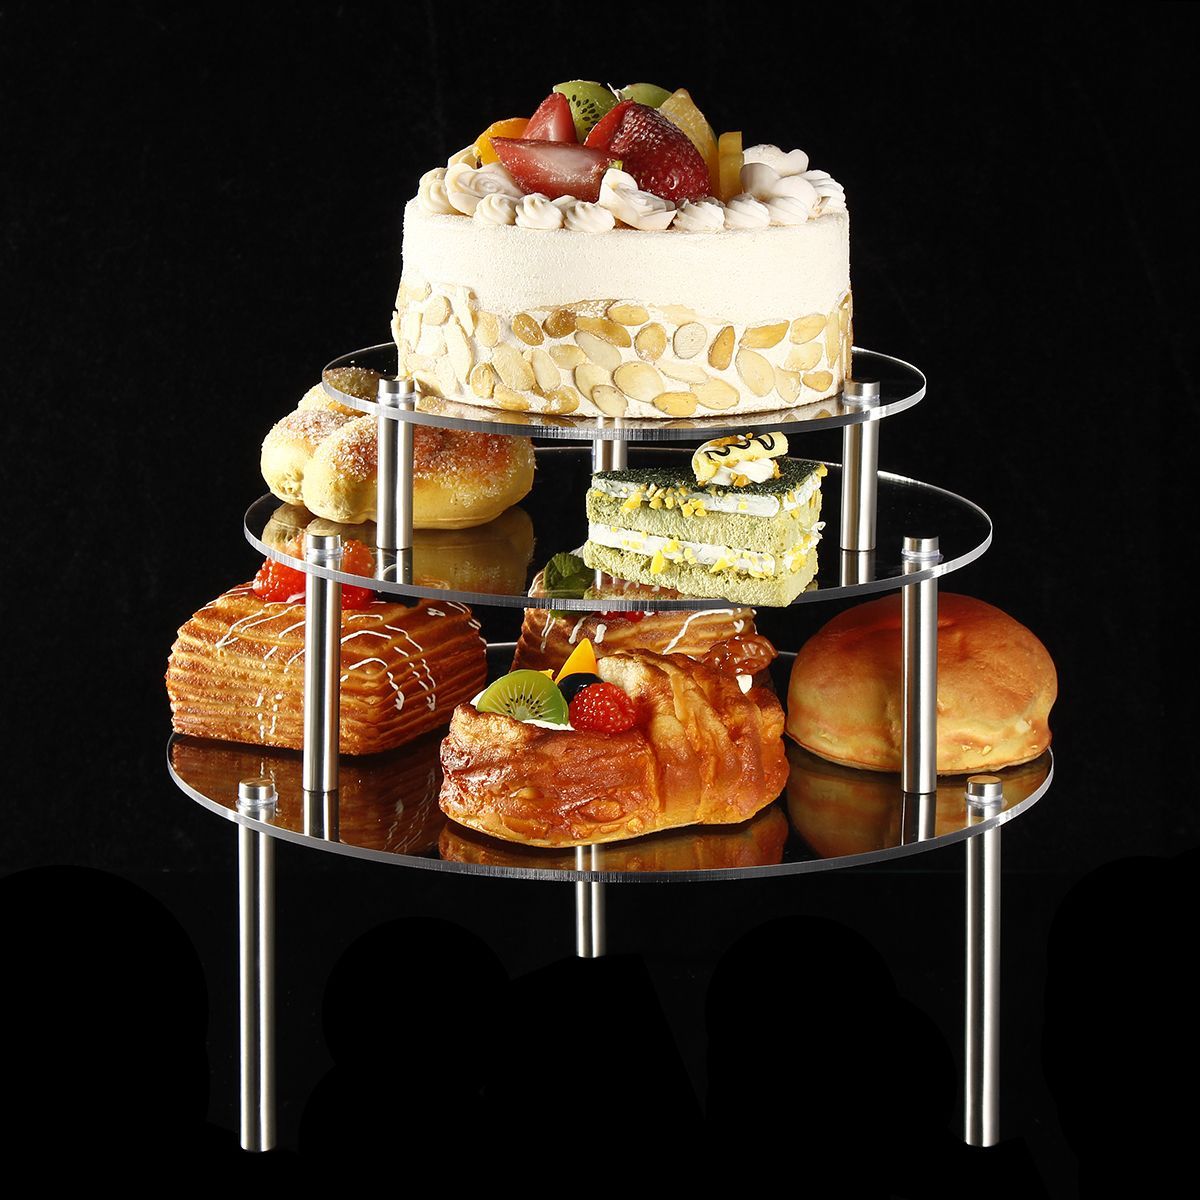 3-Tier-Cake-Stand-Storage-Rack-Wedding-Birthday-Party-Dessert-Display-Holder-Decorations-1563149